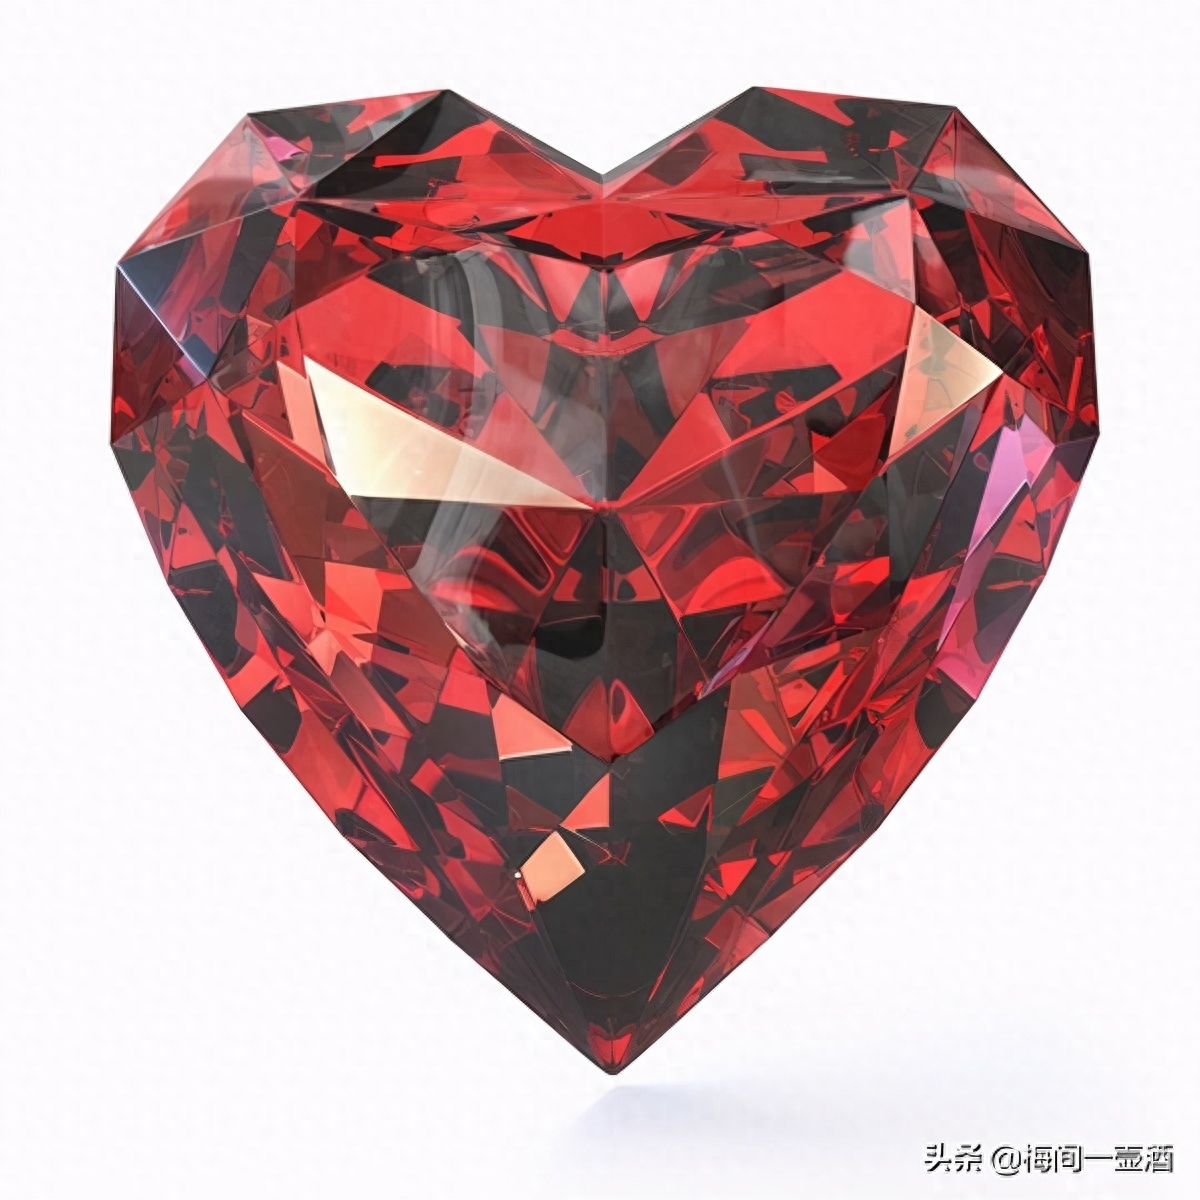 红宝石、英文名称为“Ruby